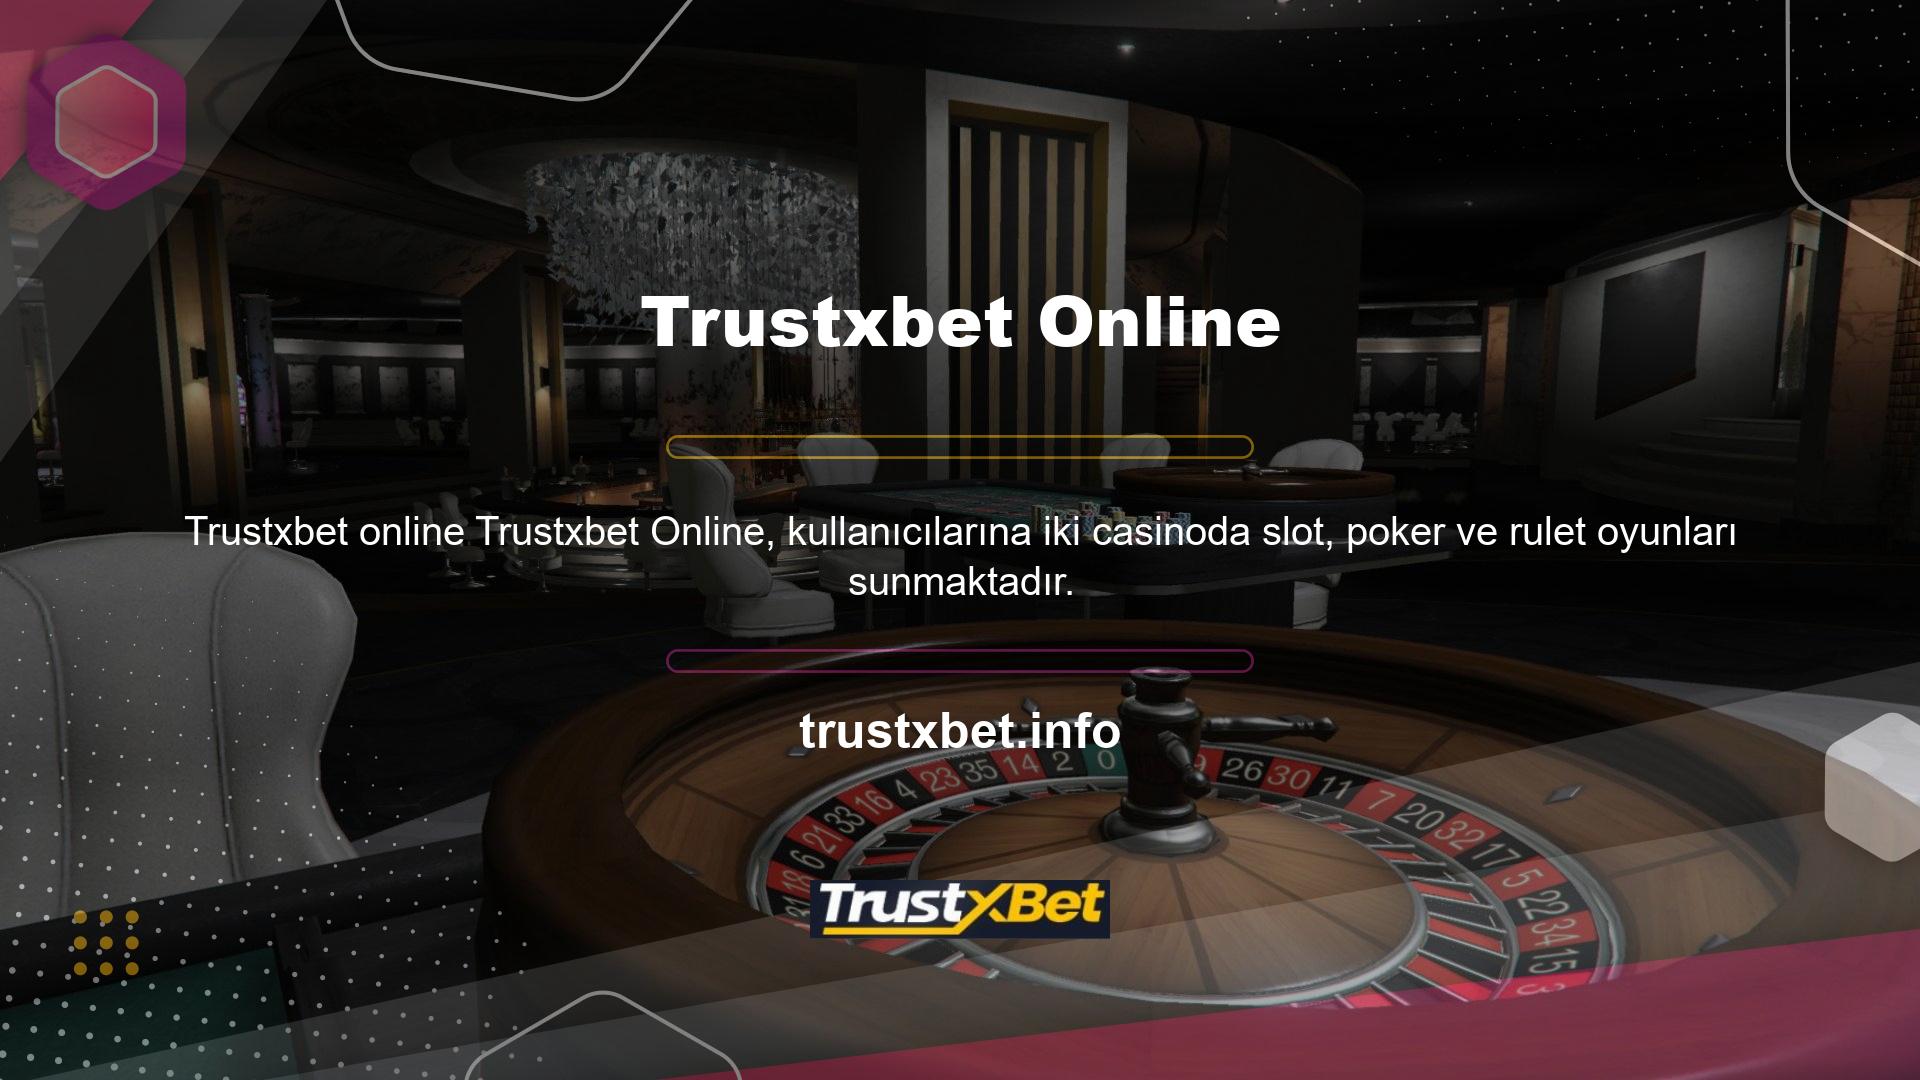 Trustxbet yeni giriş adresi ile kullanıcılar diledikleri zaman sisteme erişebilecek ve online casino oyunları oynayabilecekler